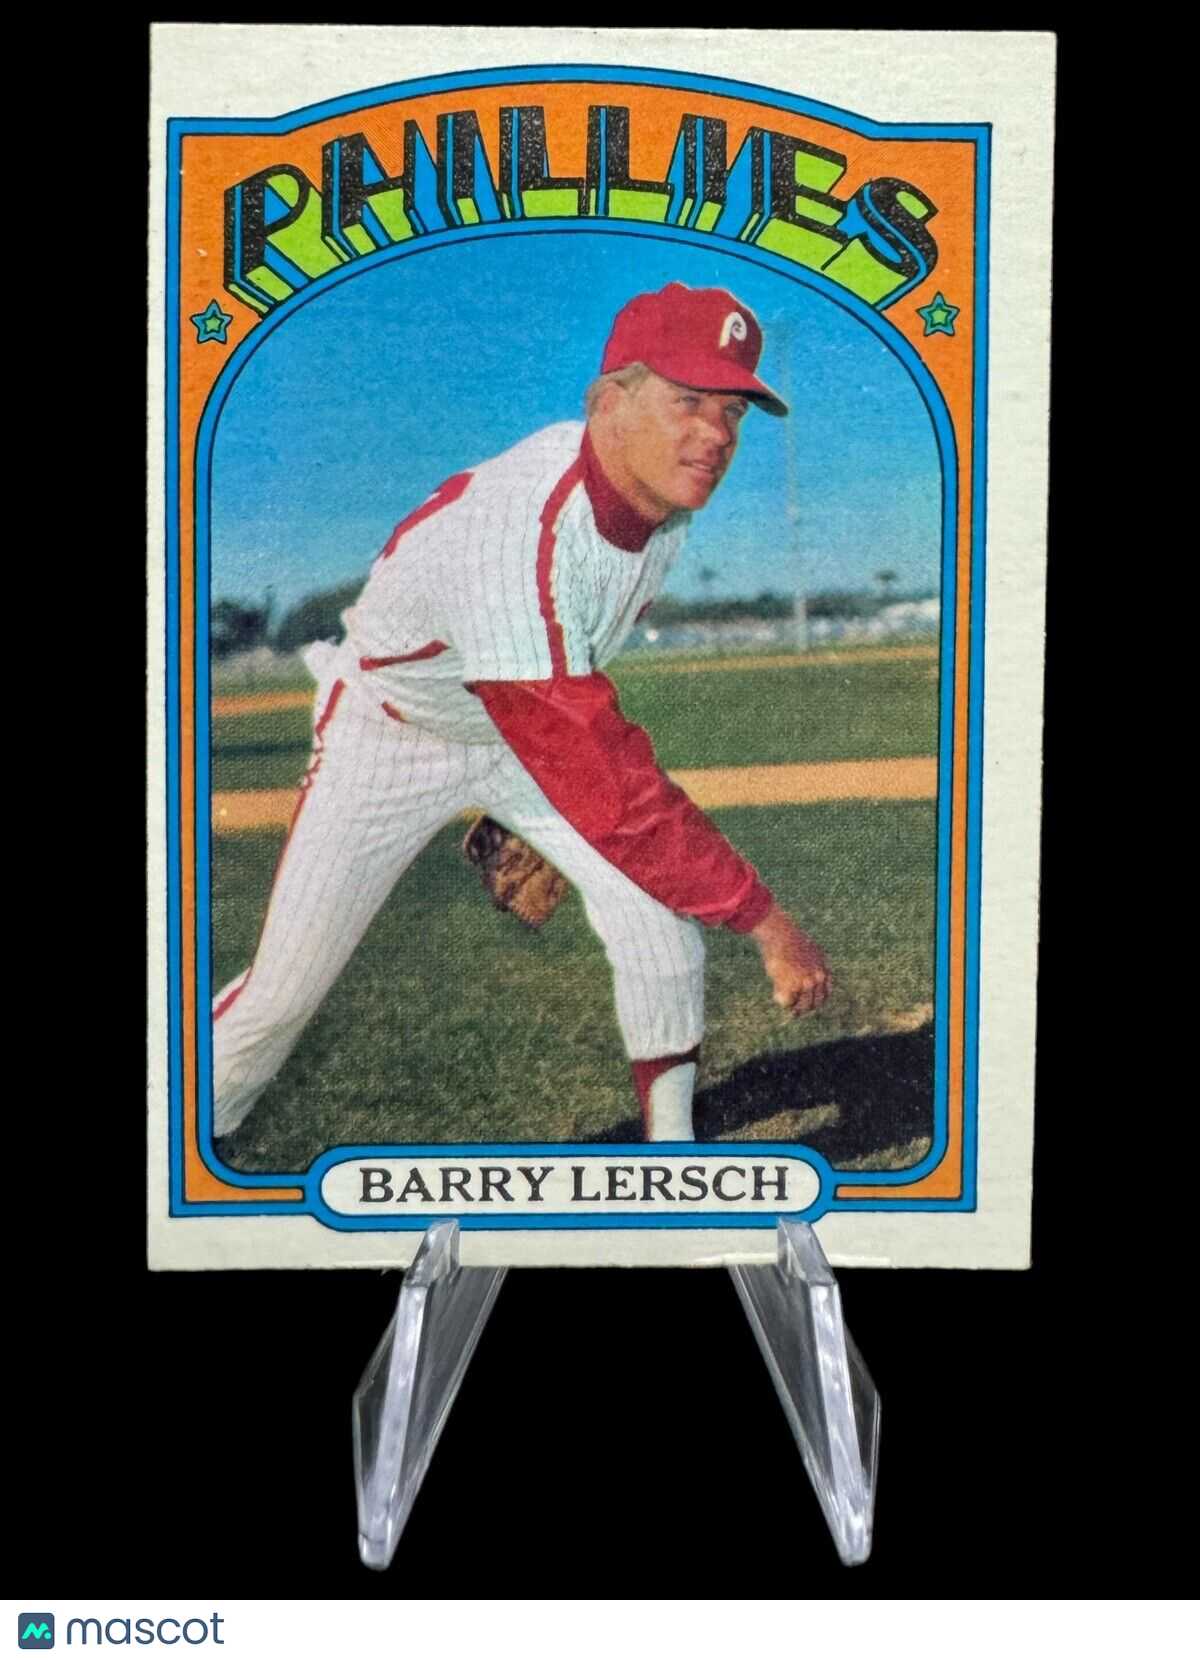 1972 Topps Barry Lersch Philadelphia Phillies #453